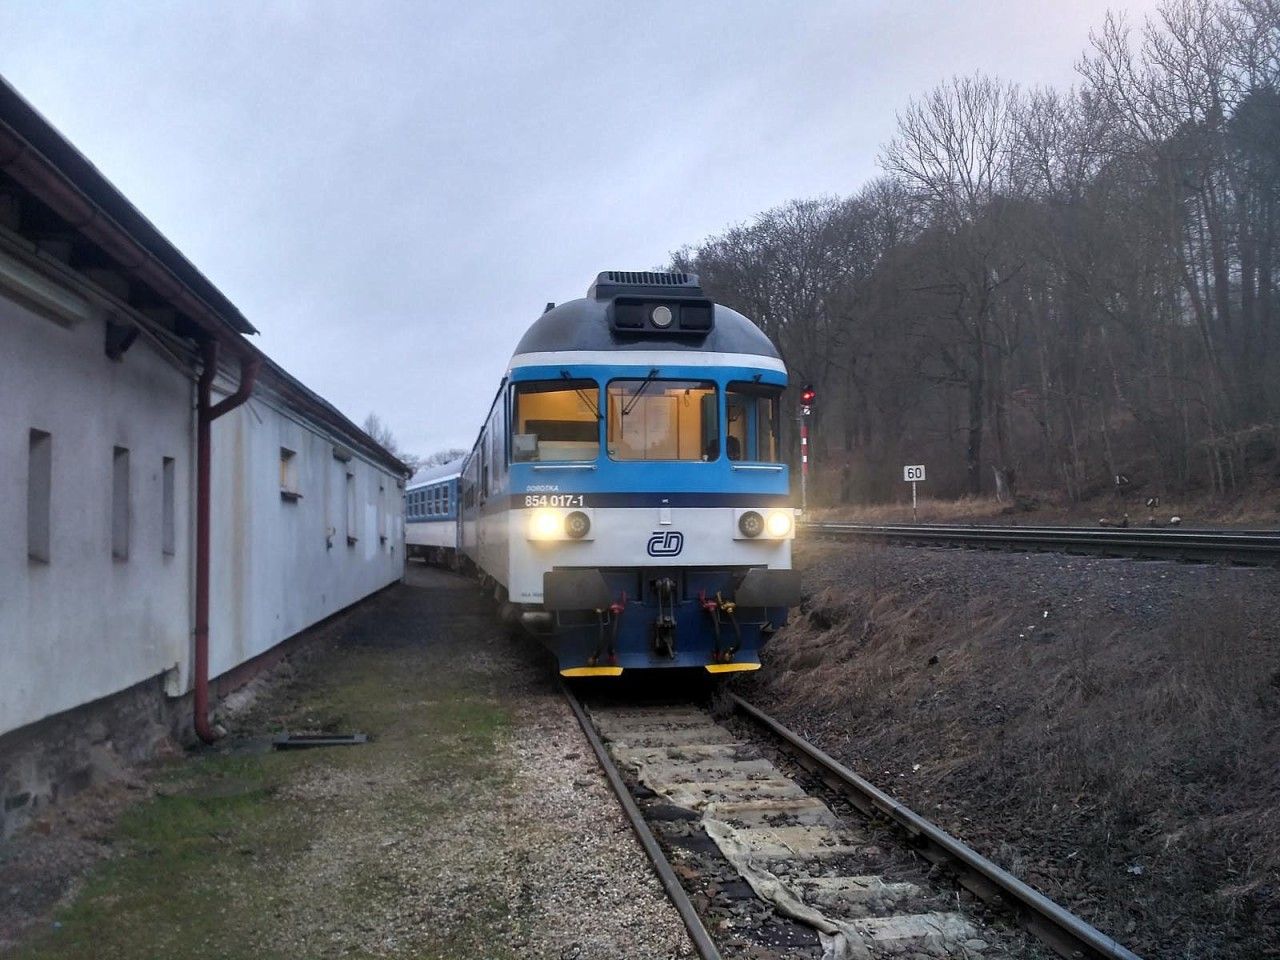 854.017 pipraven pro veden vlaku 1889, dne 1.3.2020 ve svm depu v Trutnov